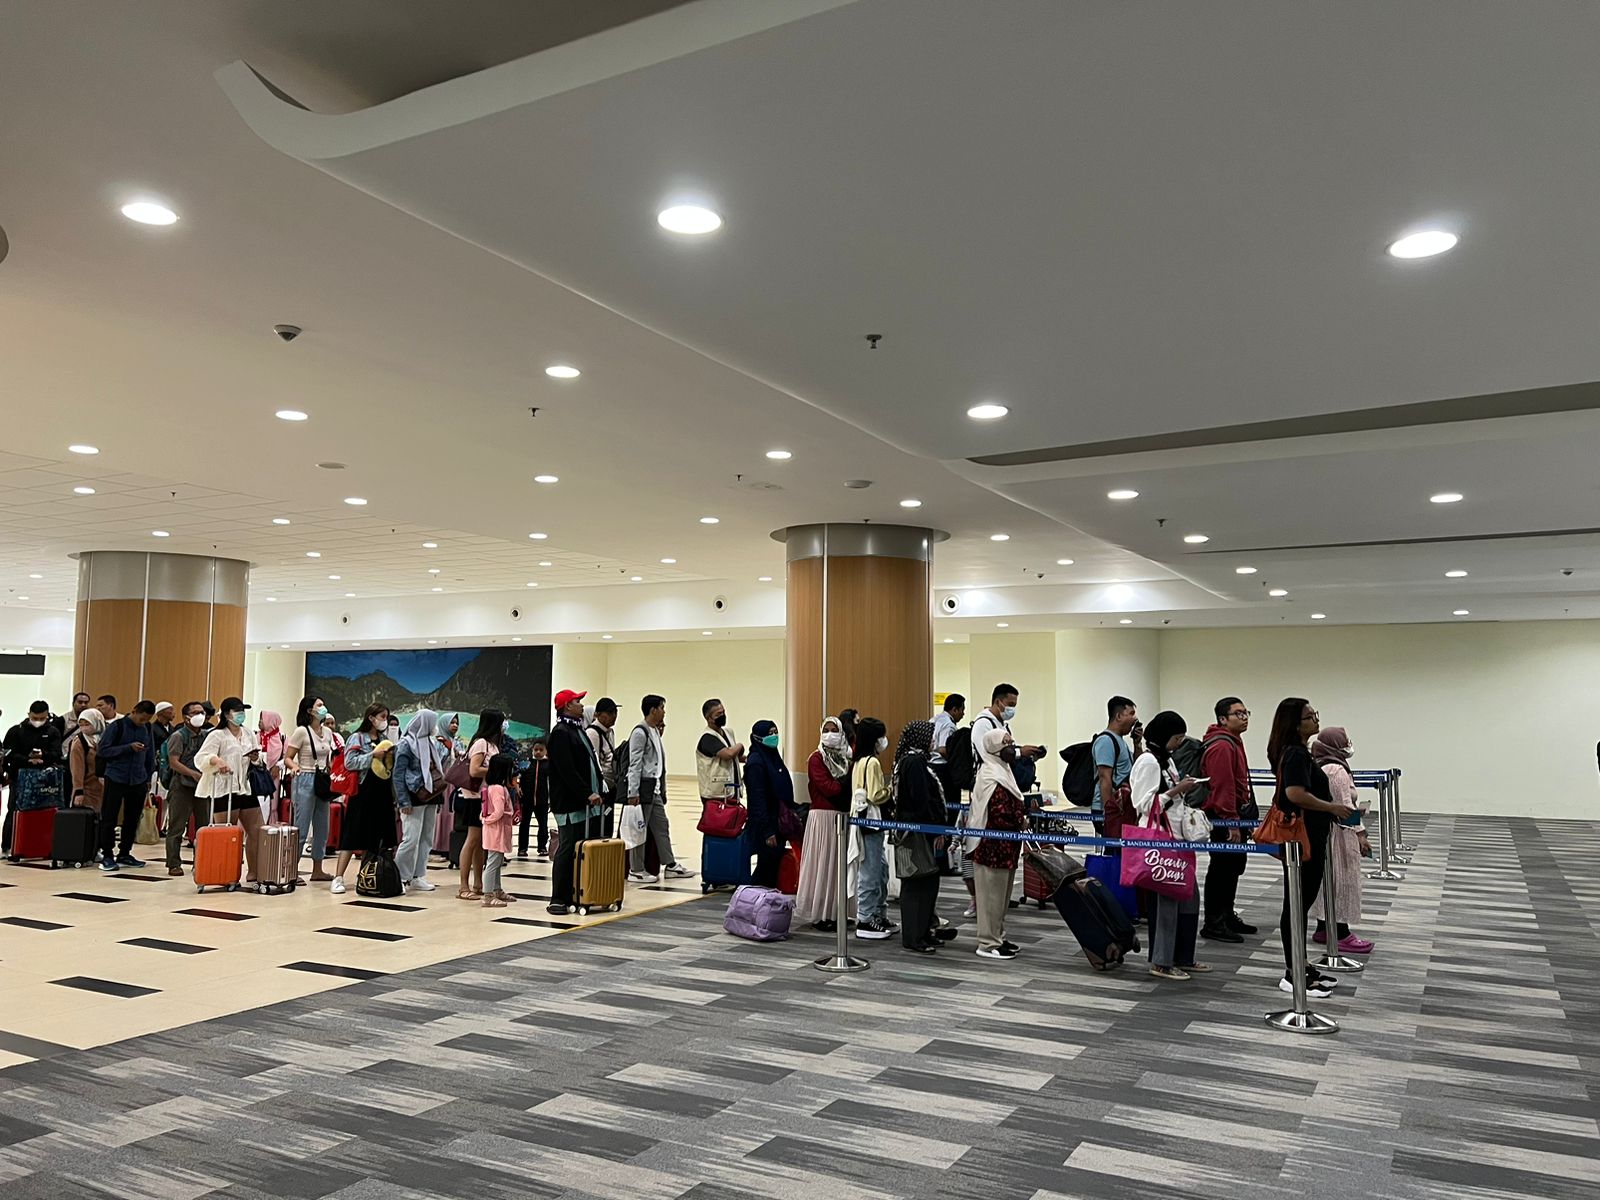 Setelah AirAsia, Ada Super Air Jet dan Garuda Indonesia Ikut Nimbrung di Bandara Kertajati